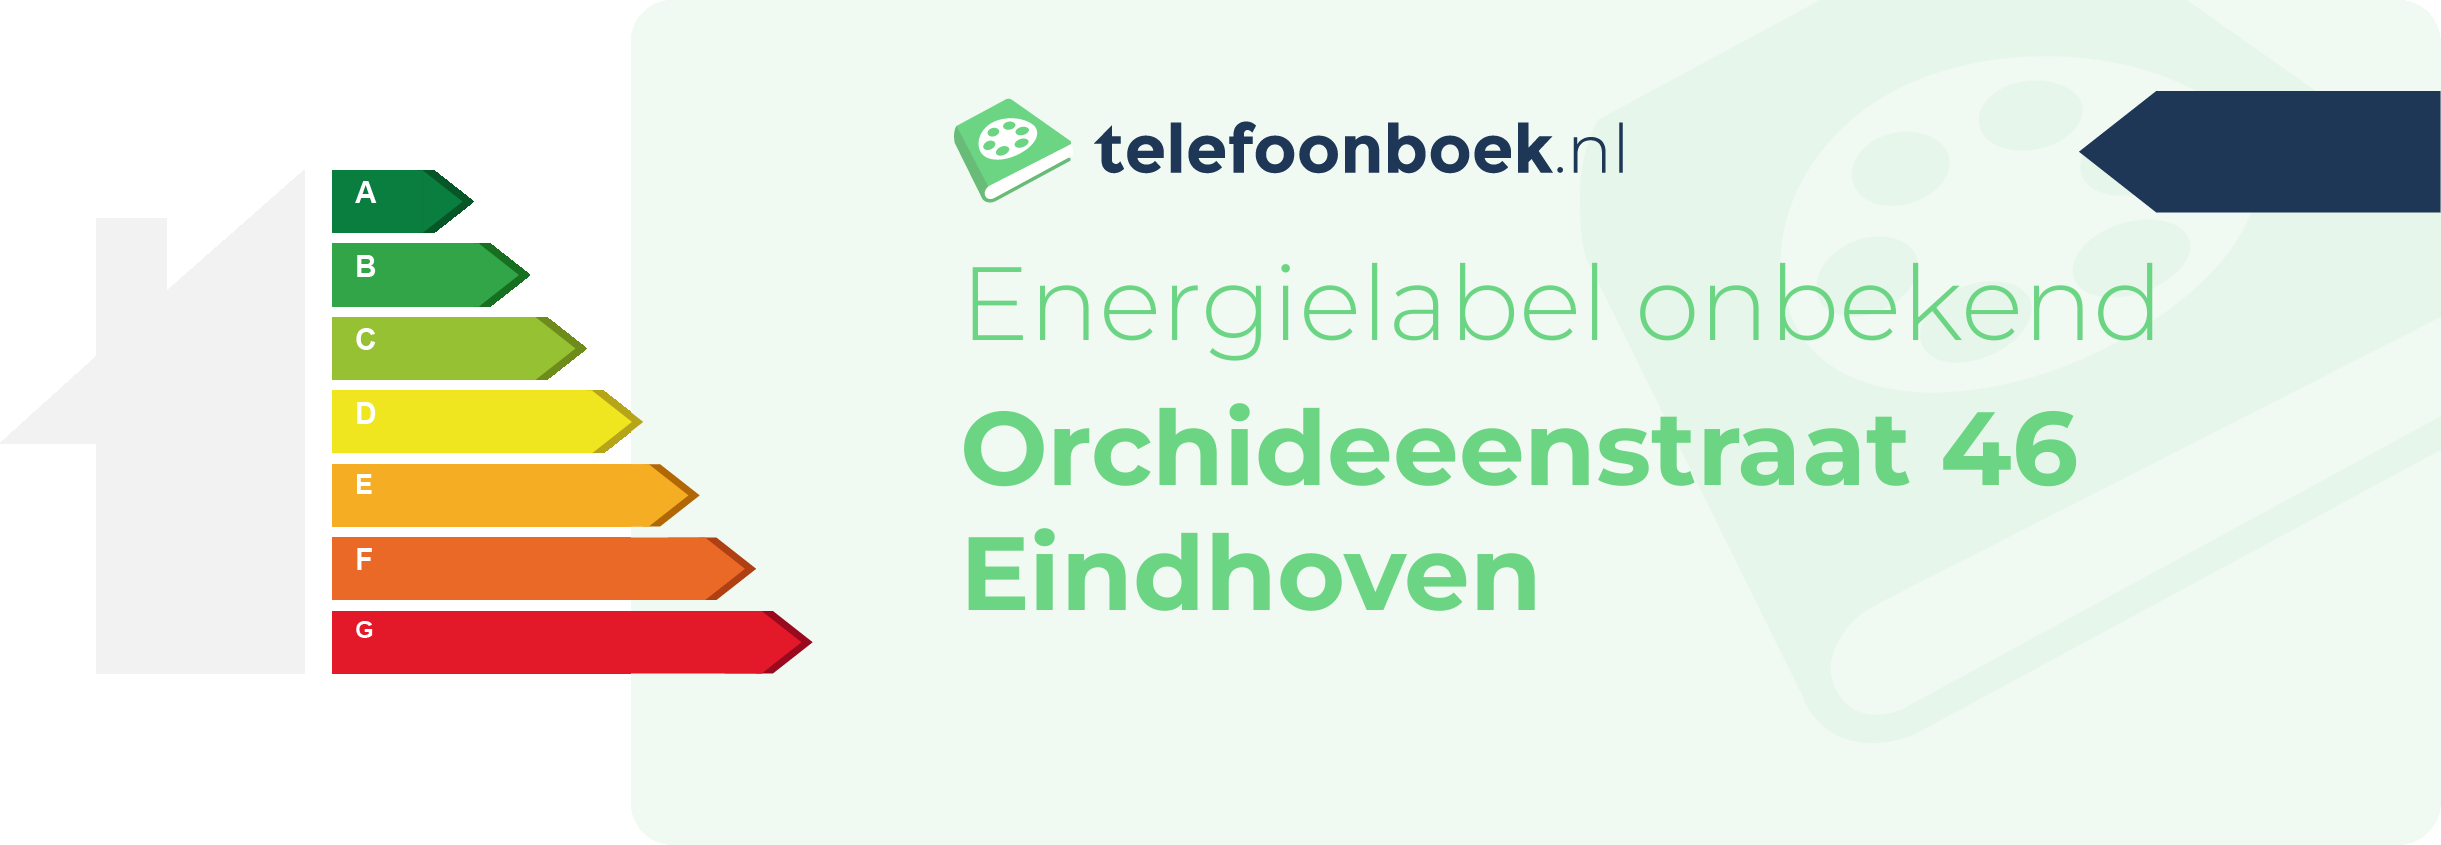 Energielabel Orchideeenstraat 46 Eindhoven